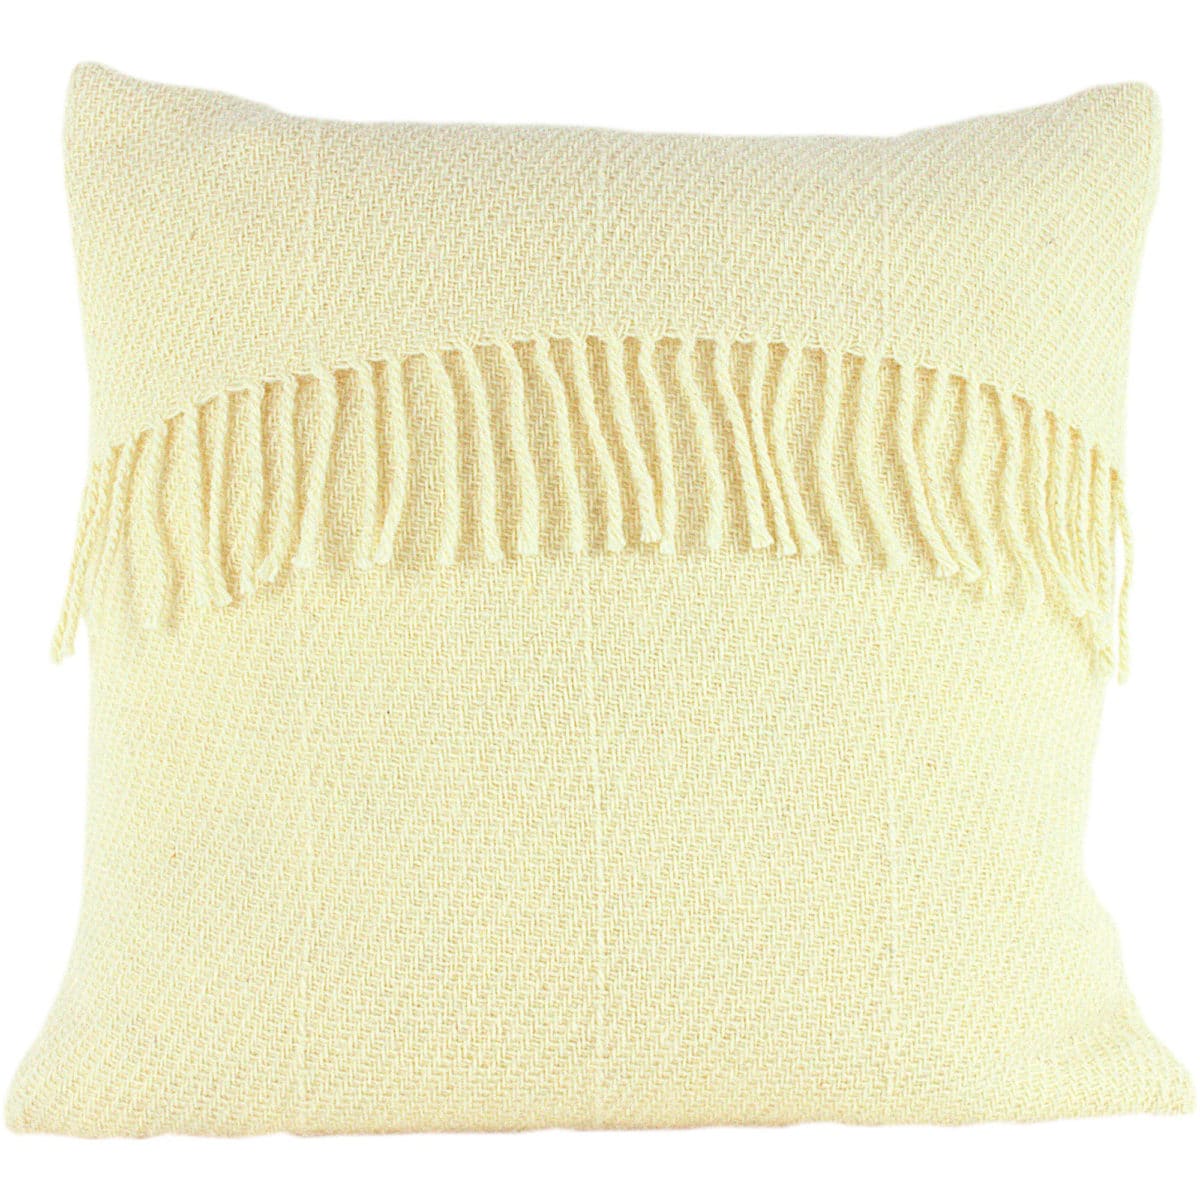 Romney Marsh Wool Cushion - White Clover - 4 sizes